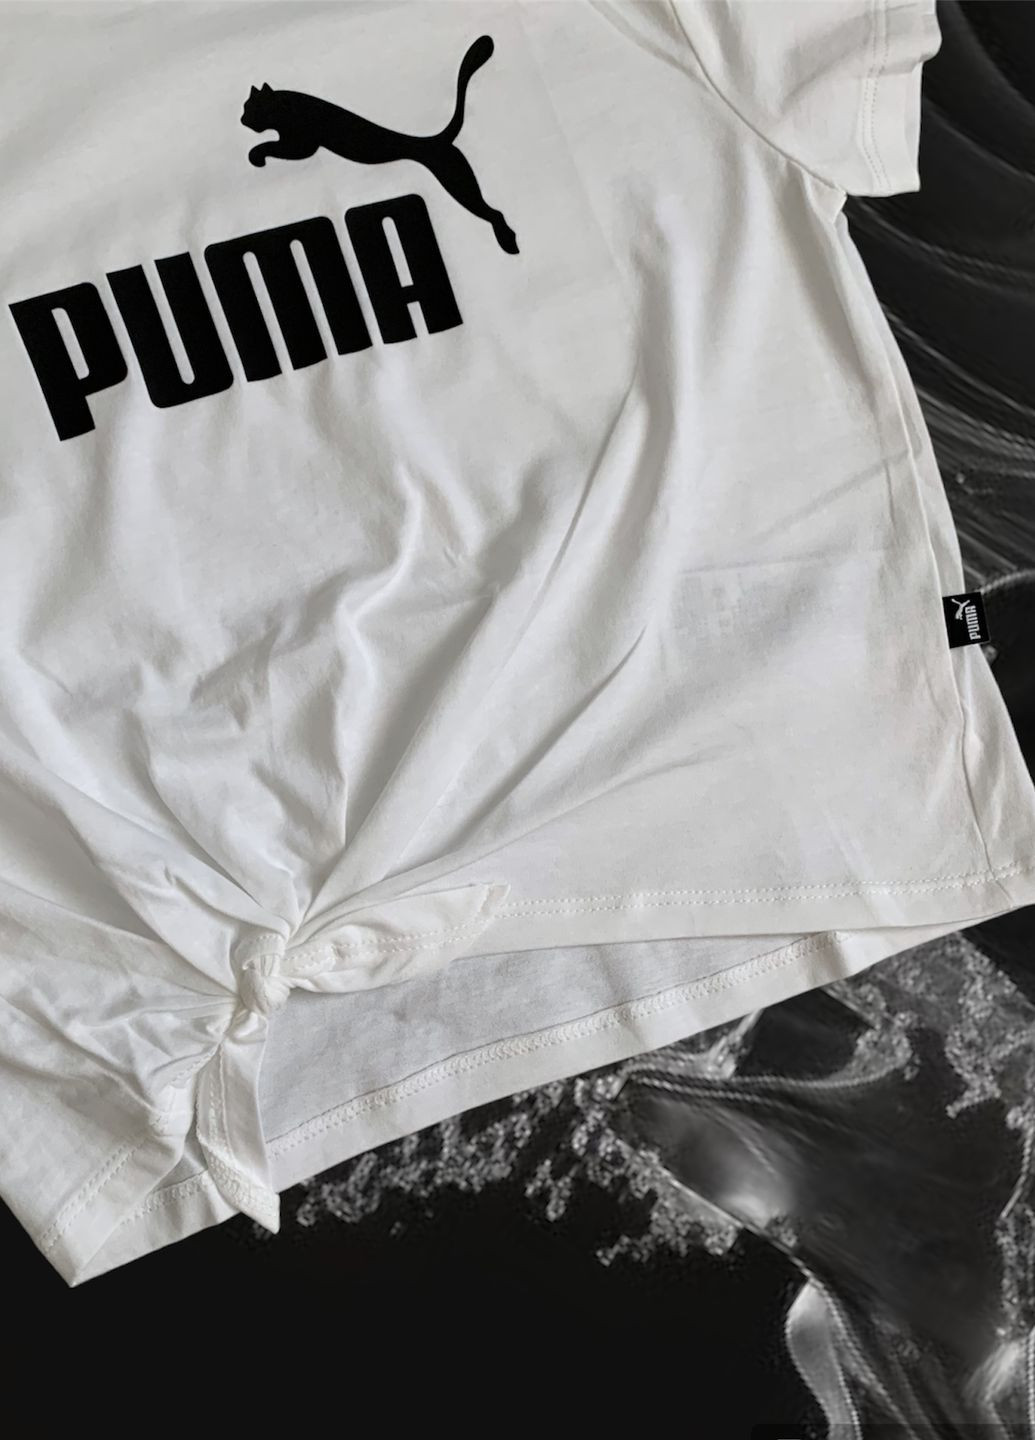 Біла футболка Puma